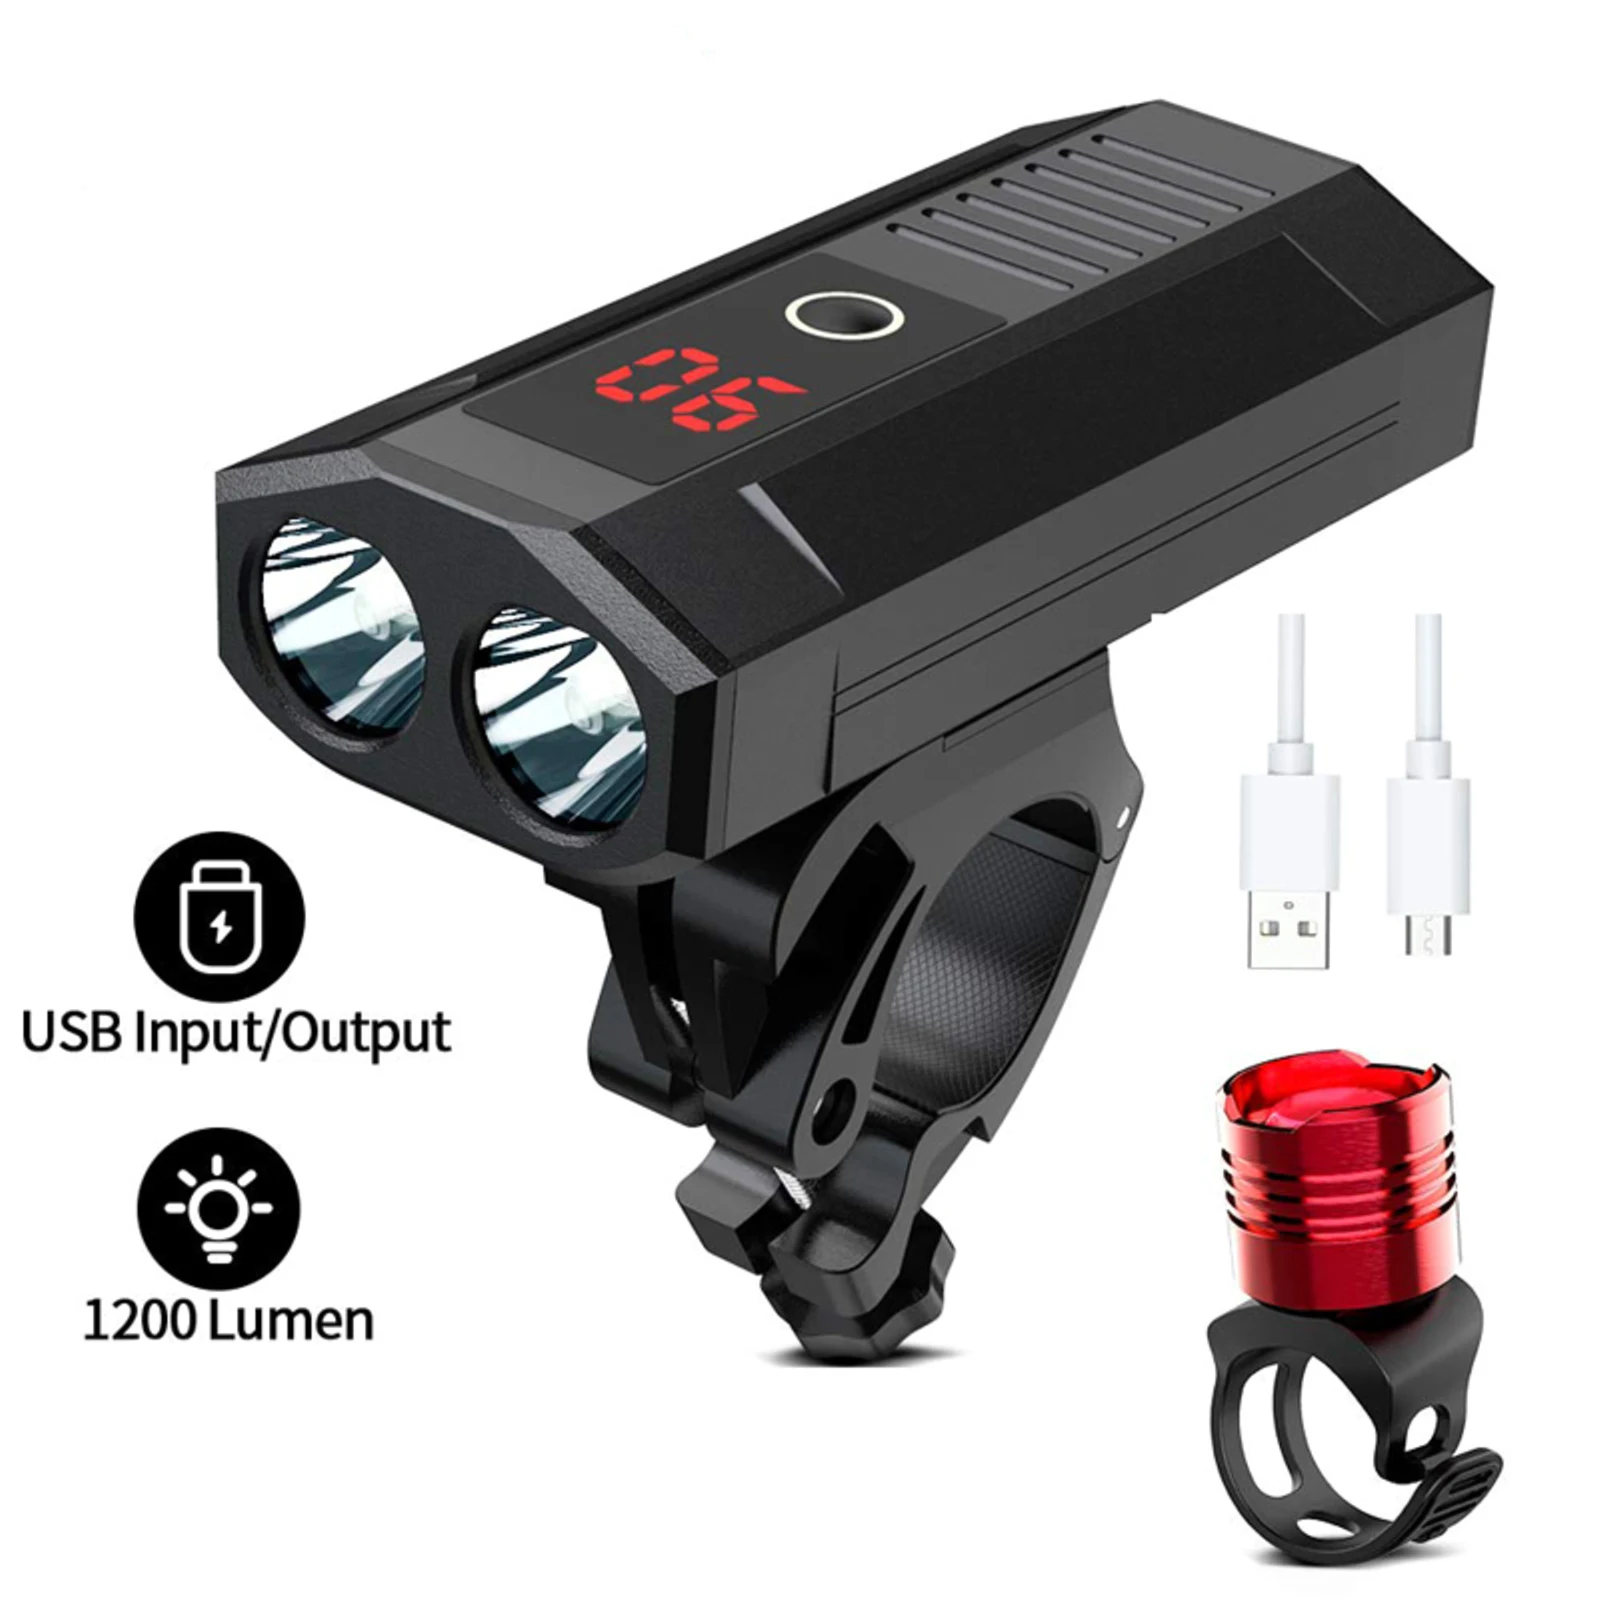 

Светодиодный велосипедный фонарь с аккумулятором на 5200 мА · ч и зарядкой от USB